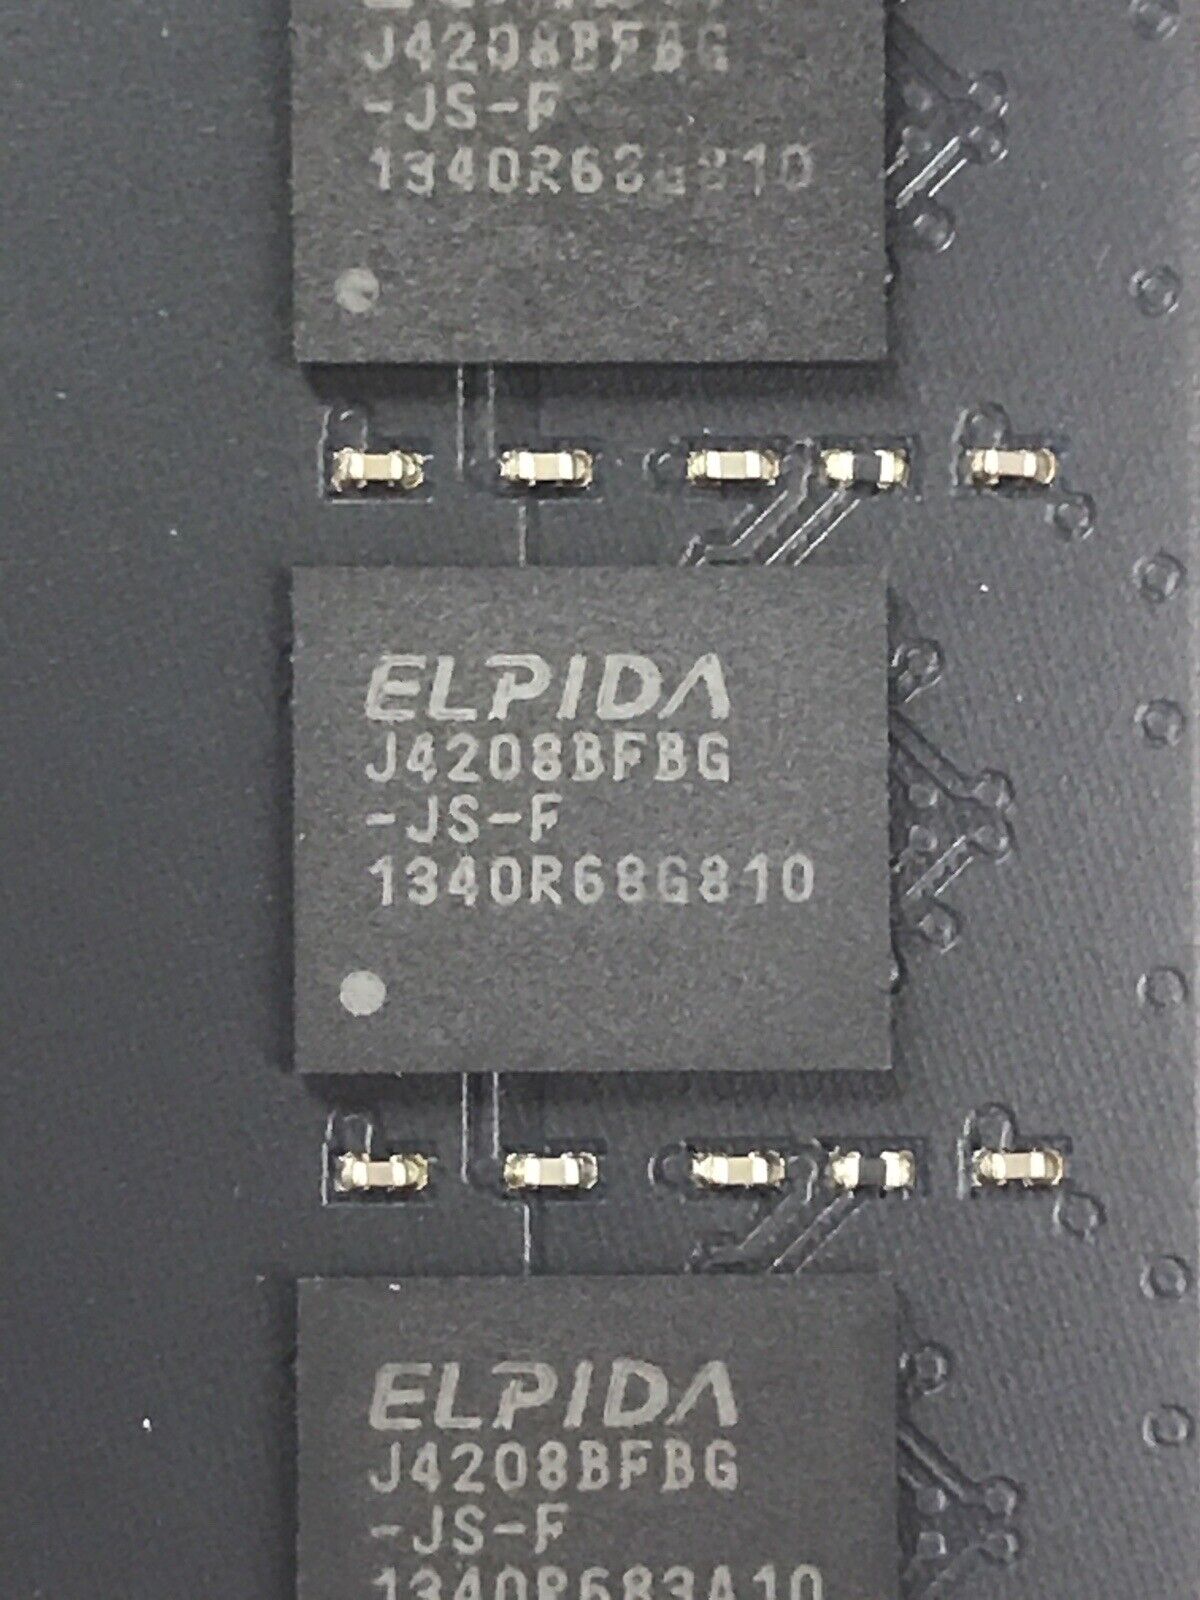 ELPIDA 12GB Kit 3x4GB 1Rx8 PC3-14900E-13-12-D1 Ram EBJ40EGB8BFWB-JS-F